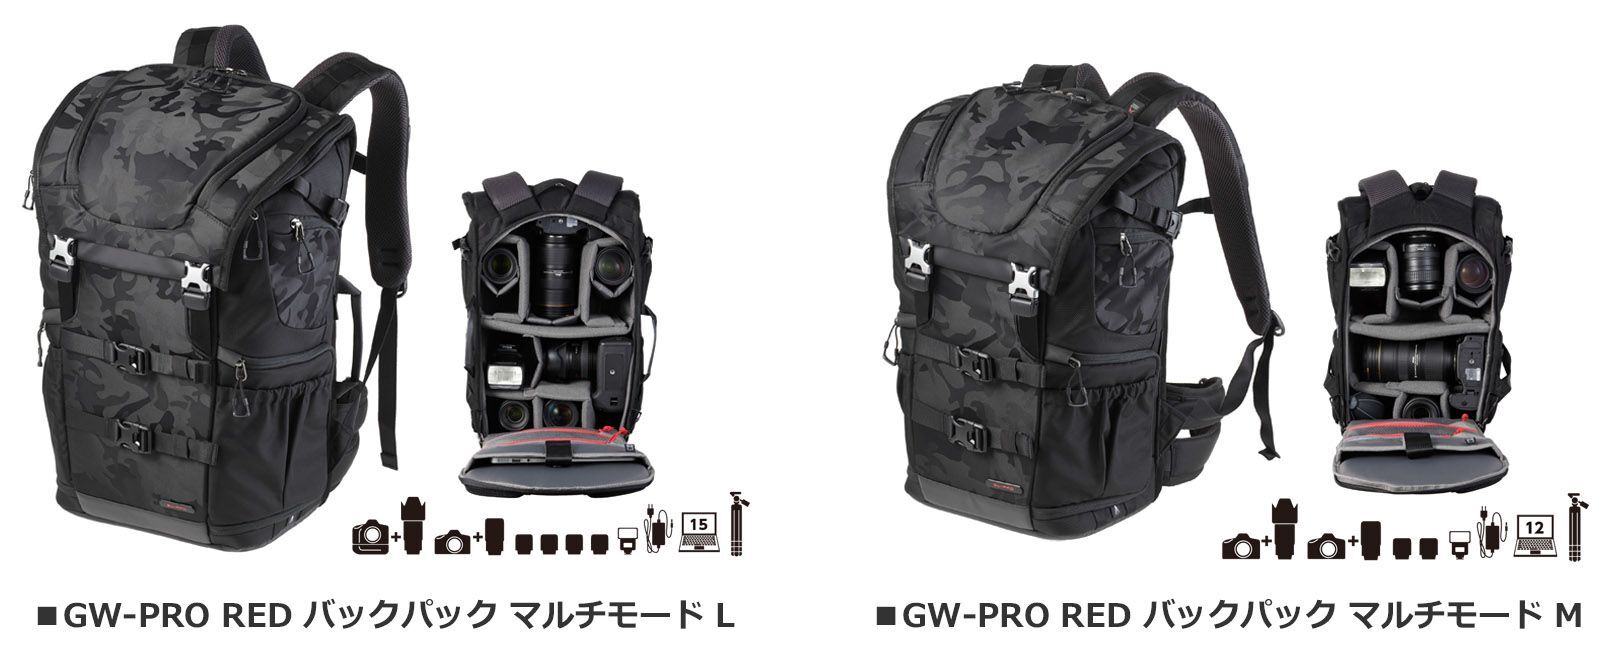 ハイエンドカメラバッグ「GW-PRO RED」シリーズ 7種 16製品を新発売！｜ハクバ写真産業株式会社のプレスリリース